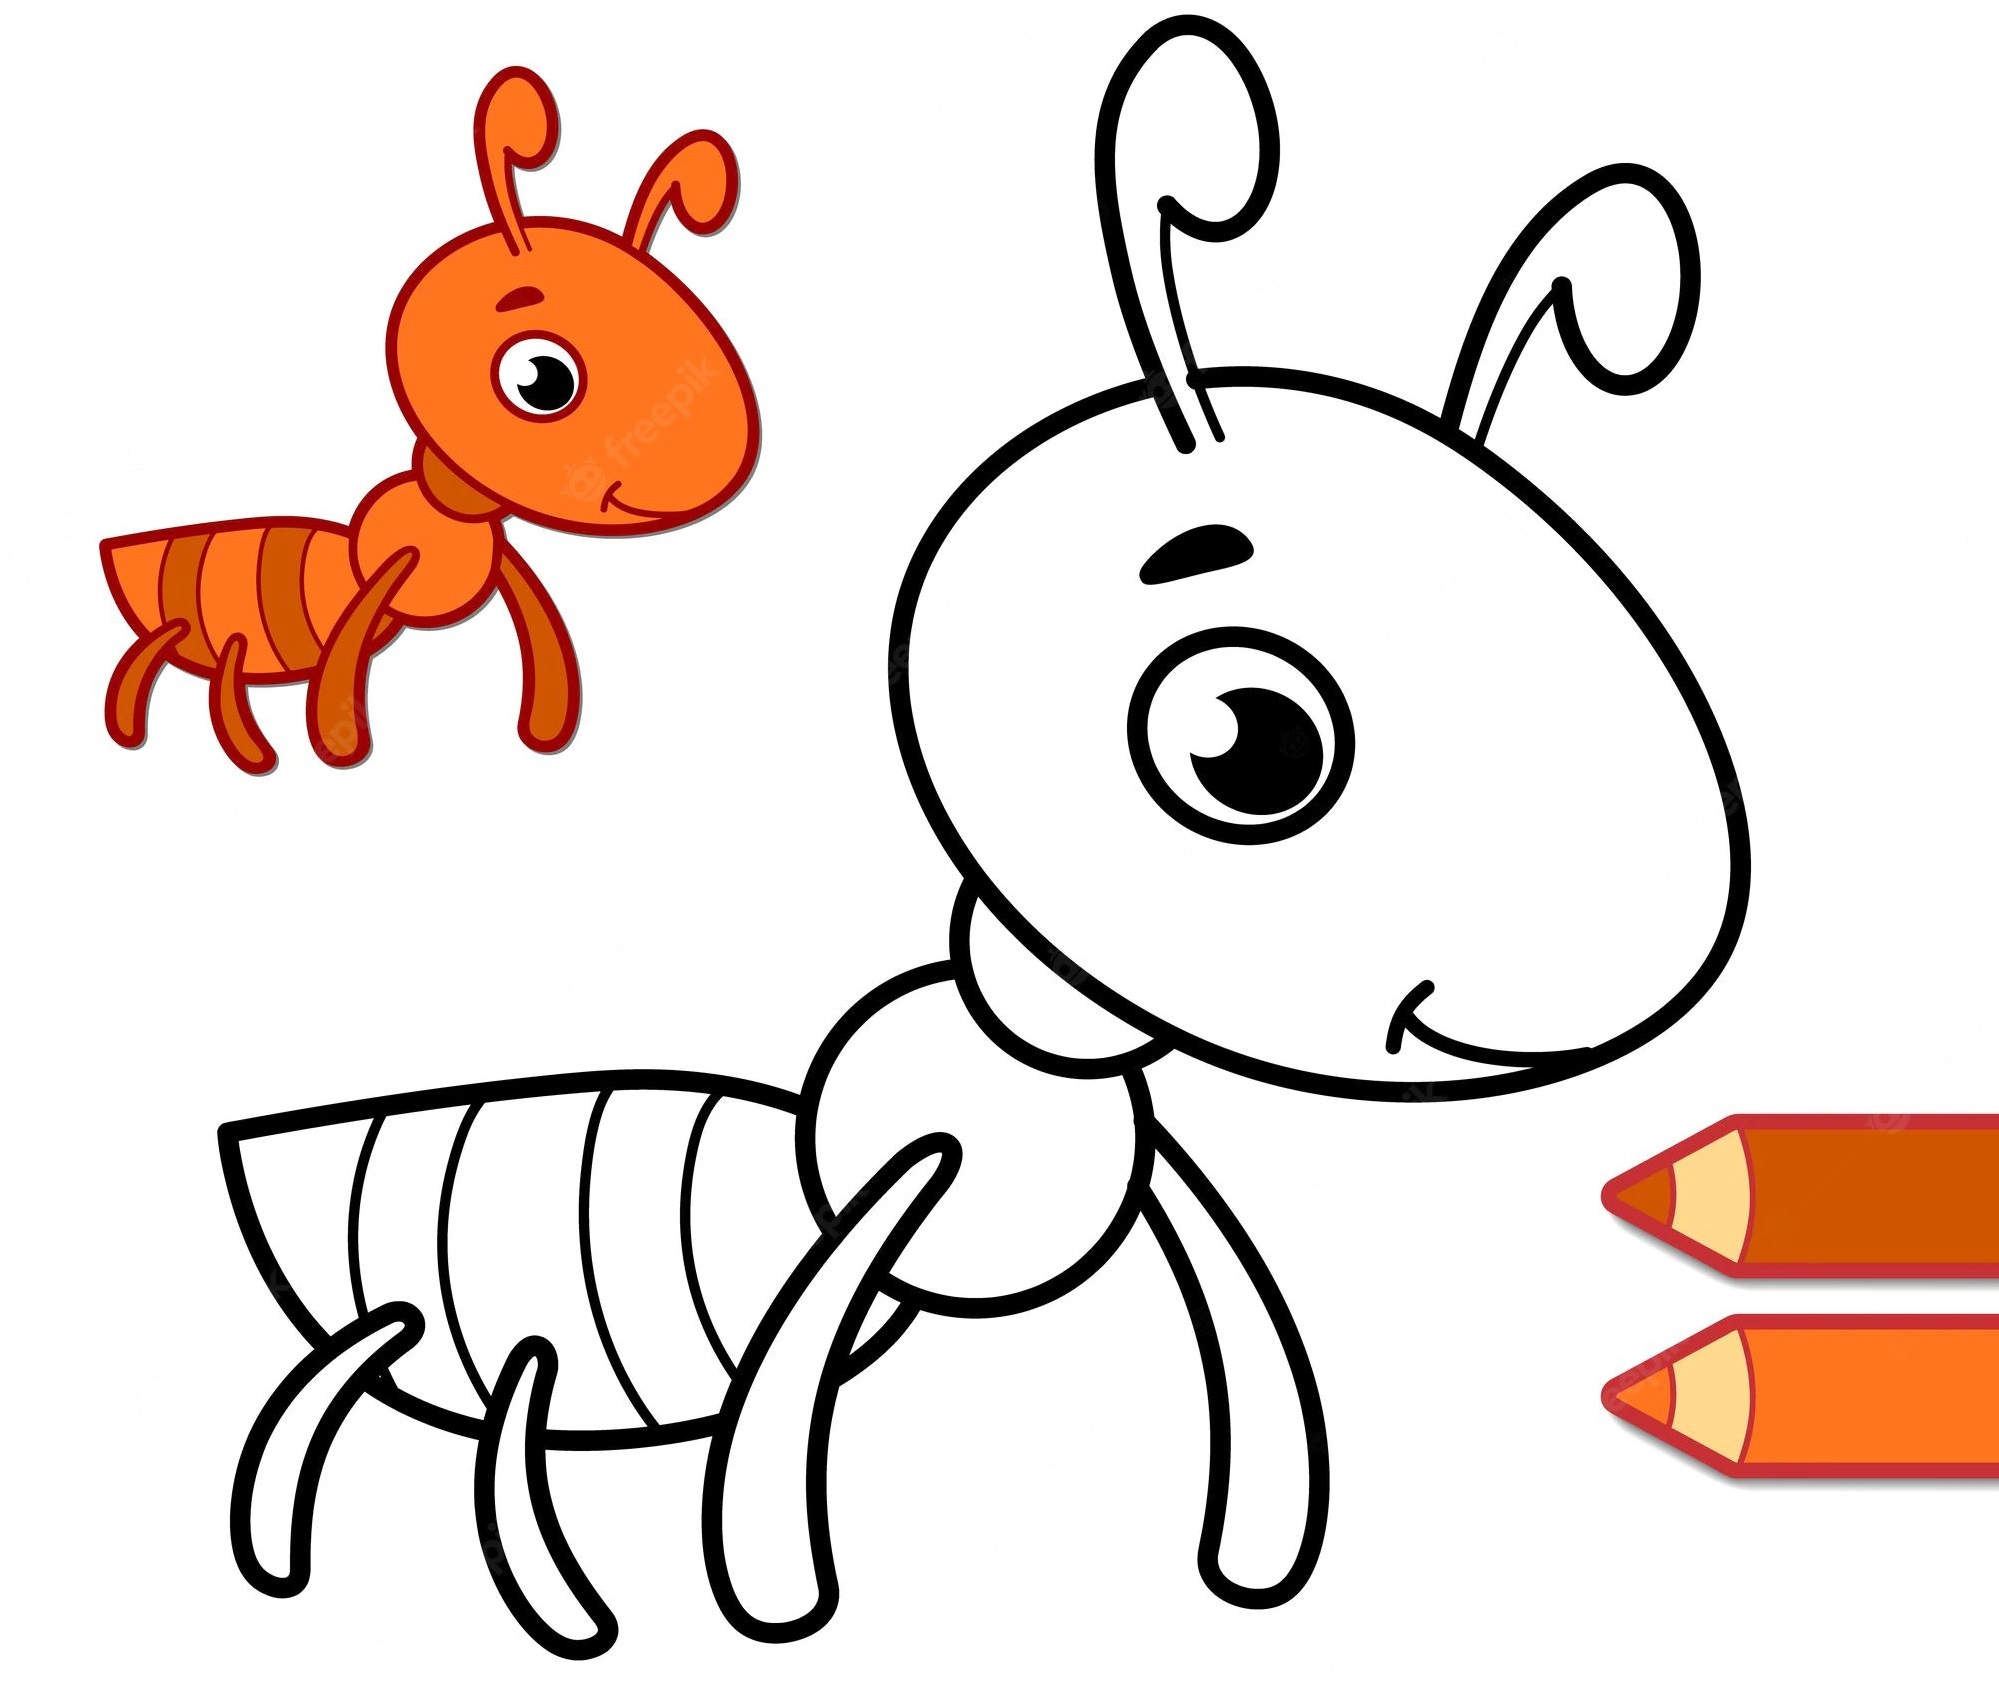 Vẽ con kiến cho bé là một cách giúp trẻ phát triển khả năng tưởng tượng và sáng tạo. Bạn có thể sử dụng các mẫu hình vẽ đơn giản về con kiến để giúp trẻ học về hình dạng, màu sắc và công việc của con kiến trong tự nhiên.